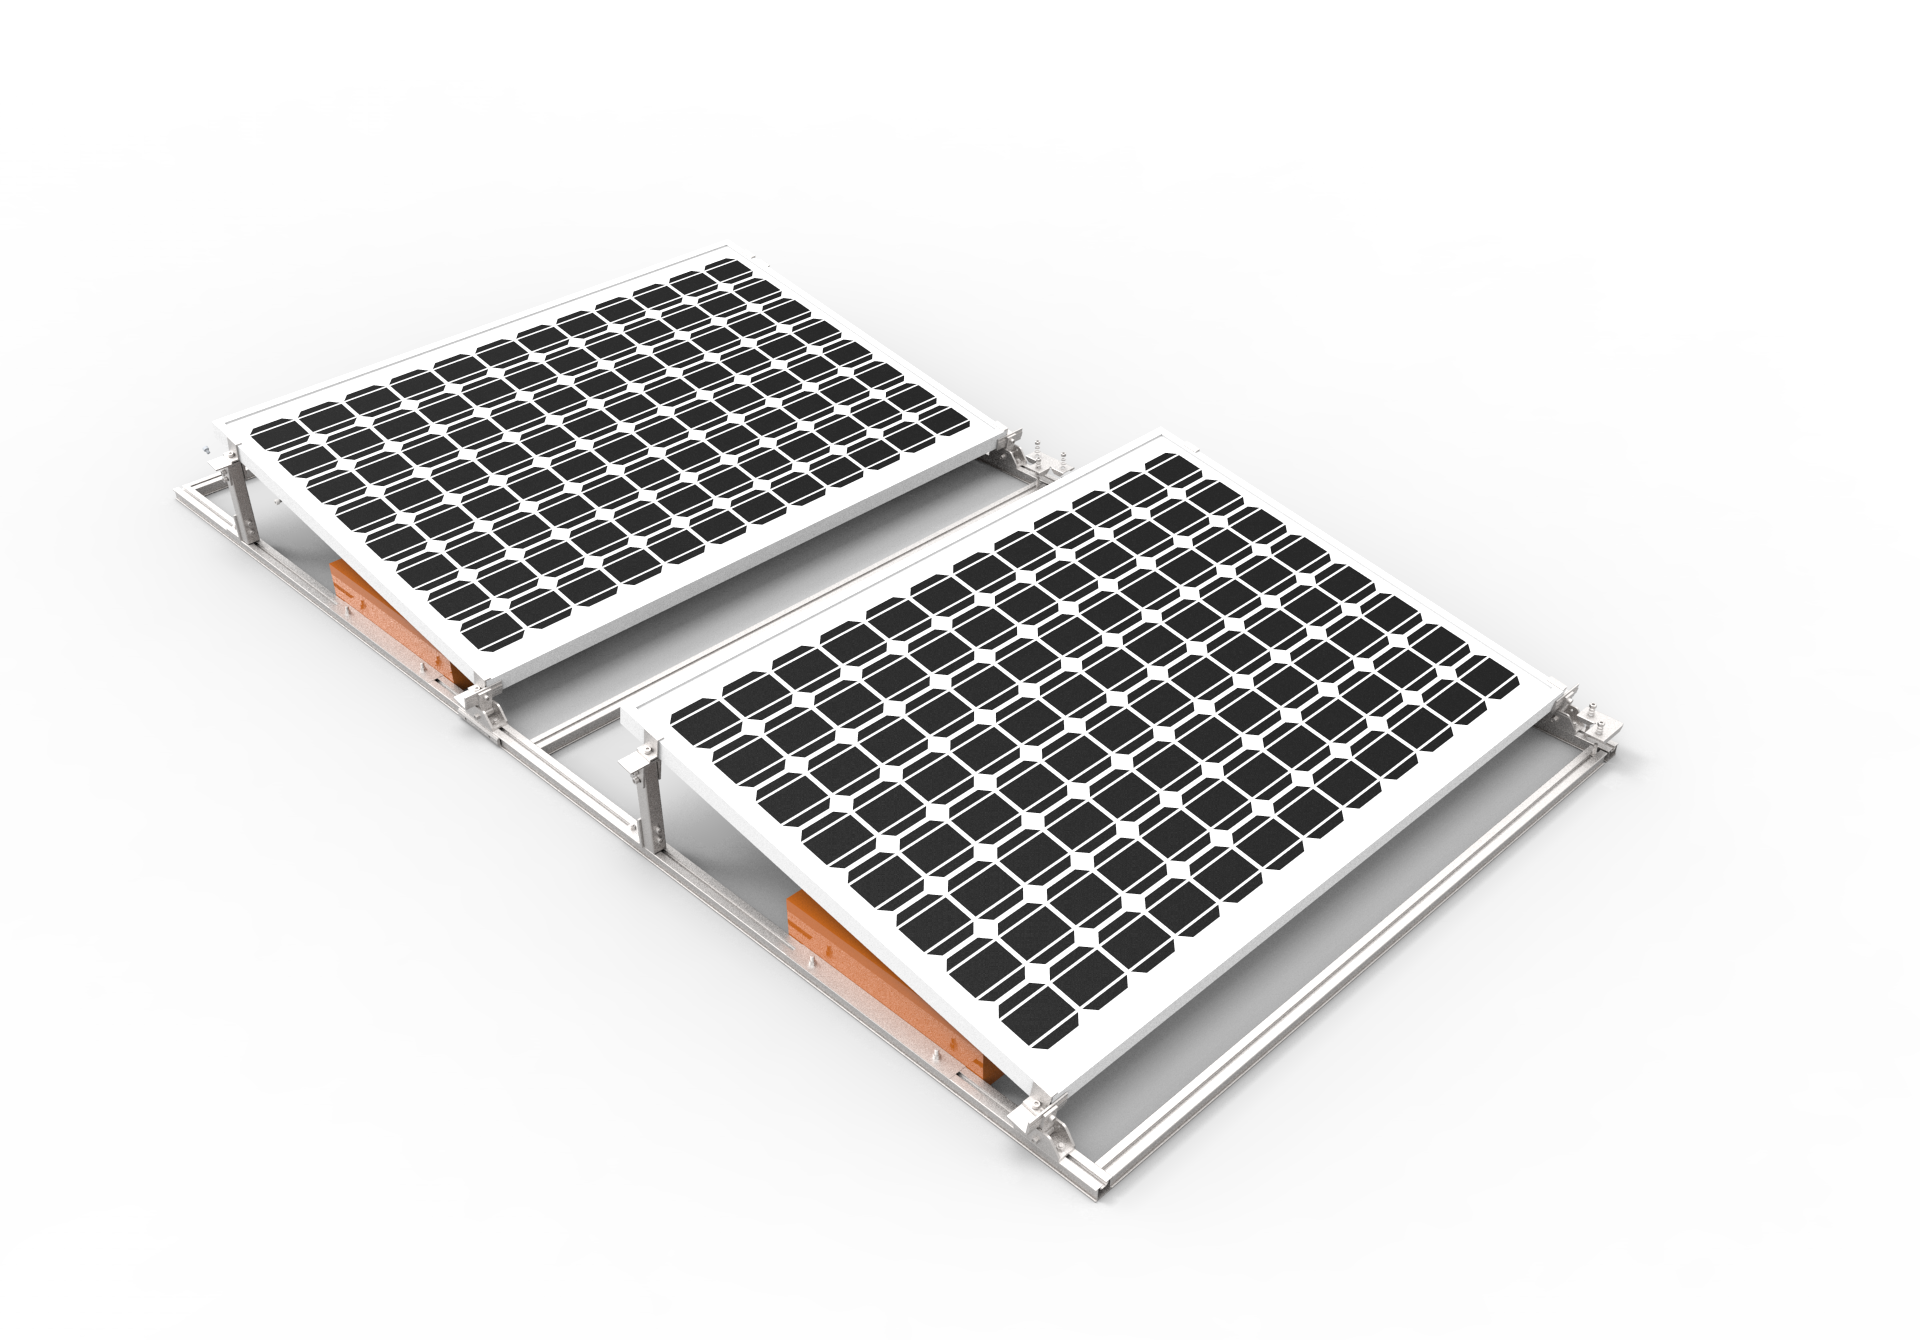 Montaje de panel solar de techo plano de fácil instalación ajustable